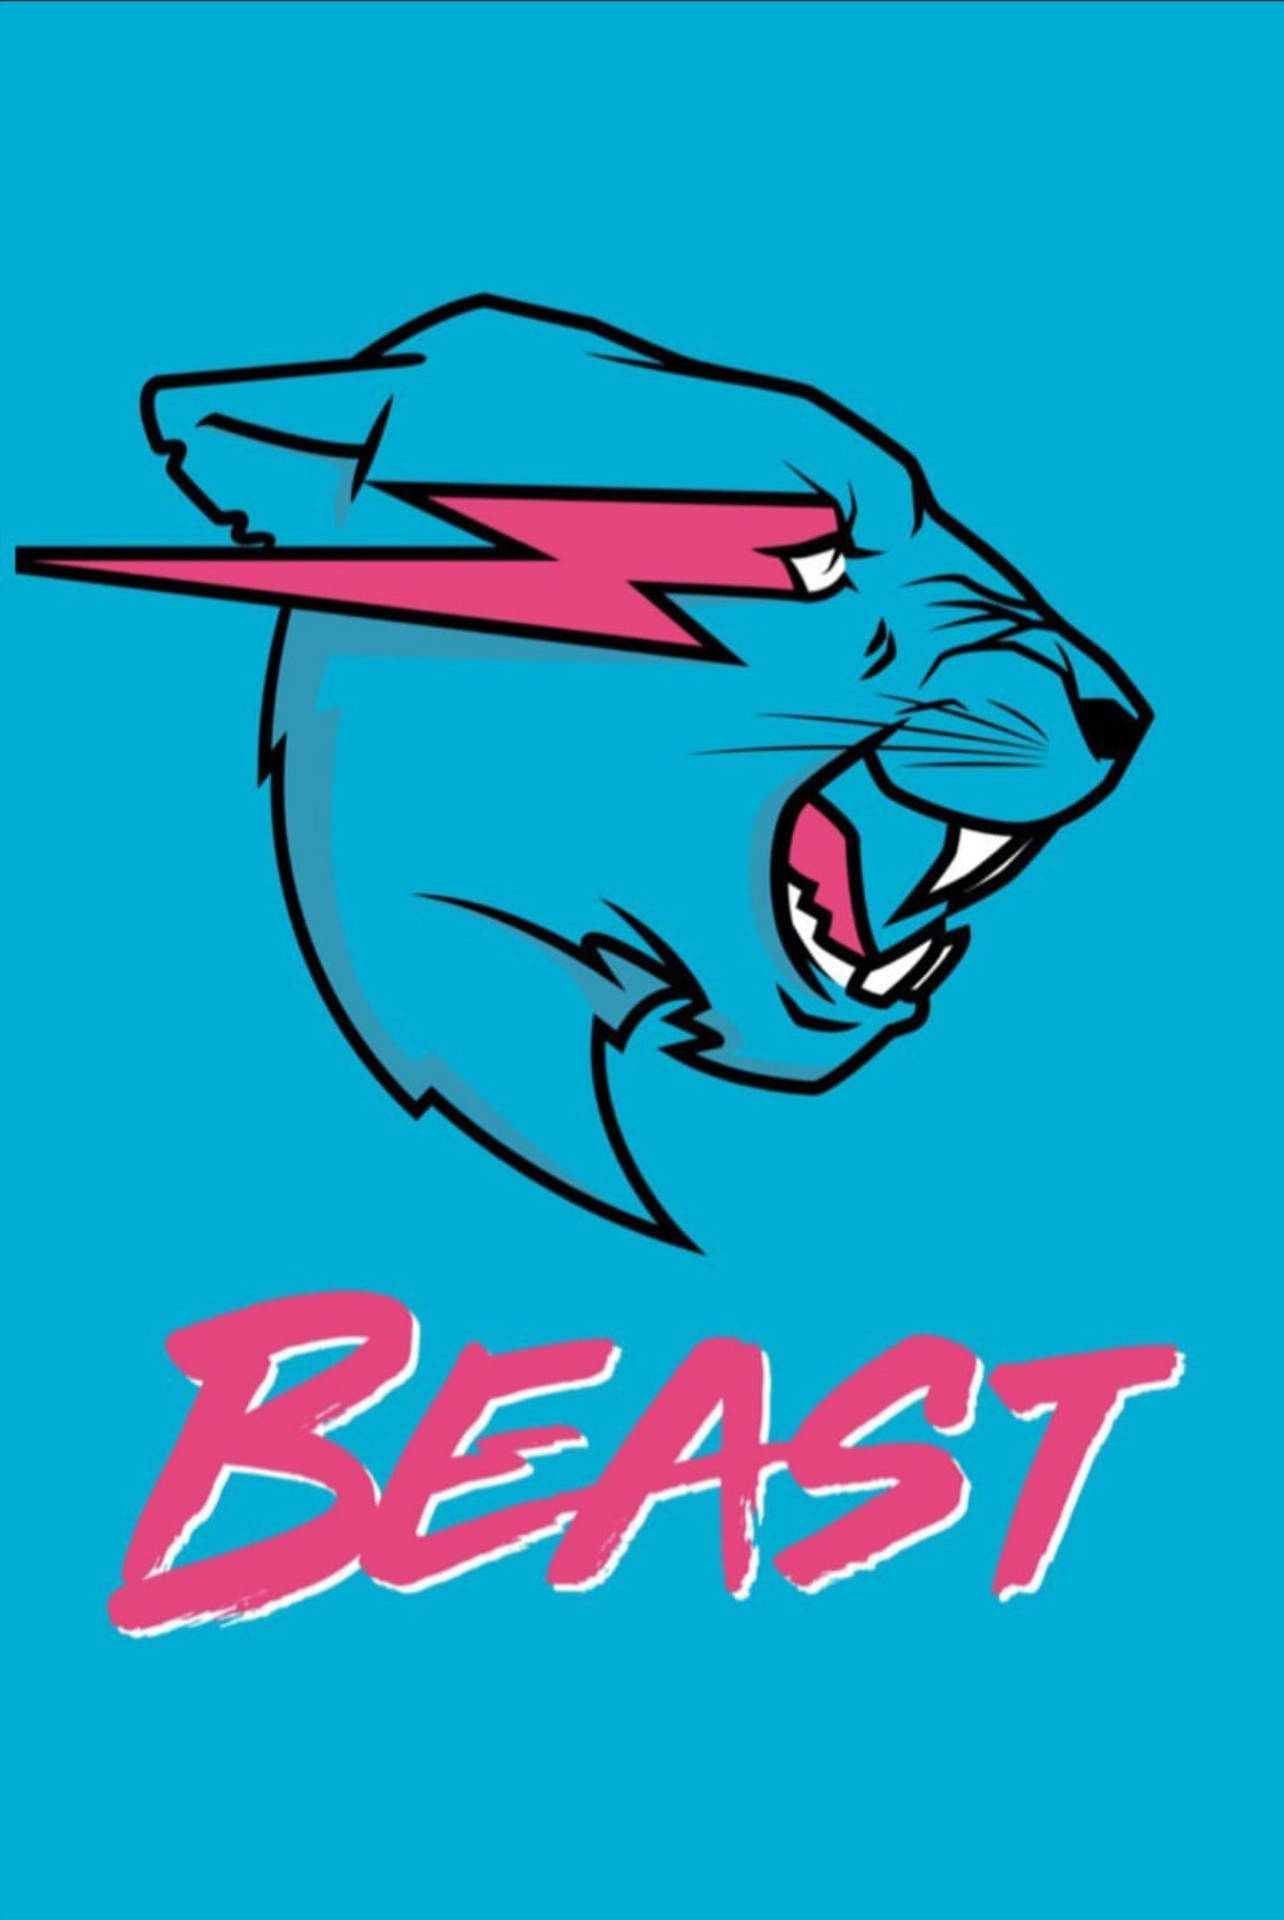 Mr Beast Logo In Blue Backdrop Wallpaper